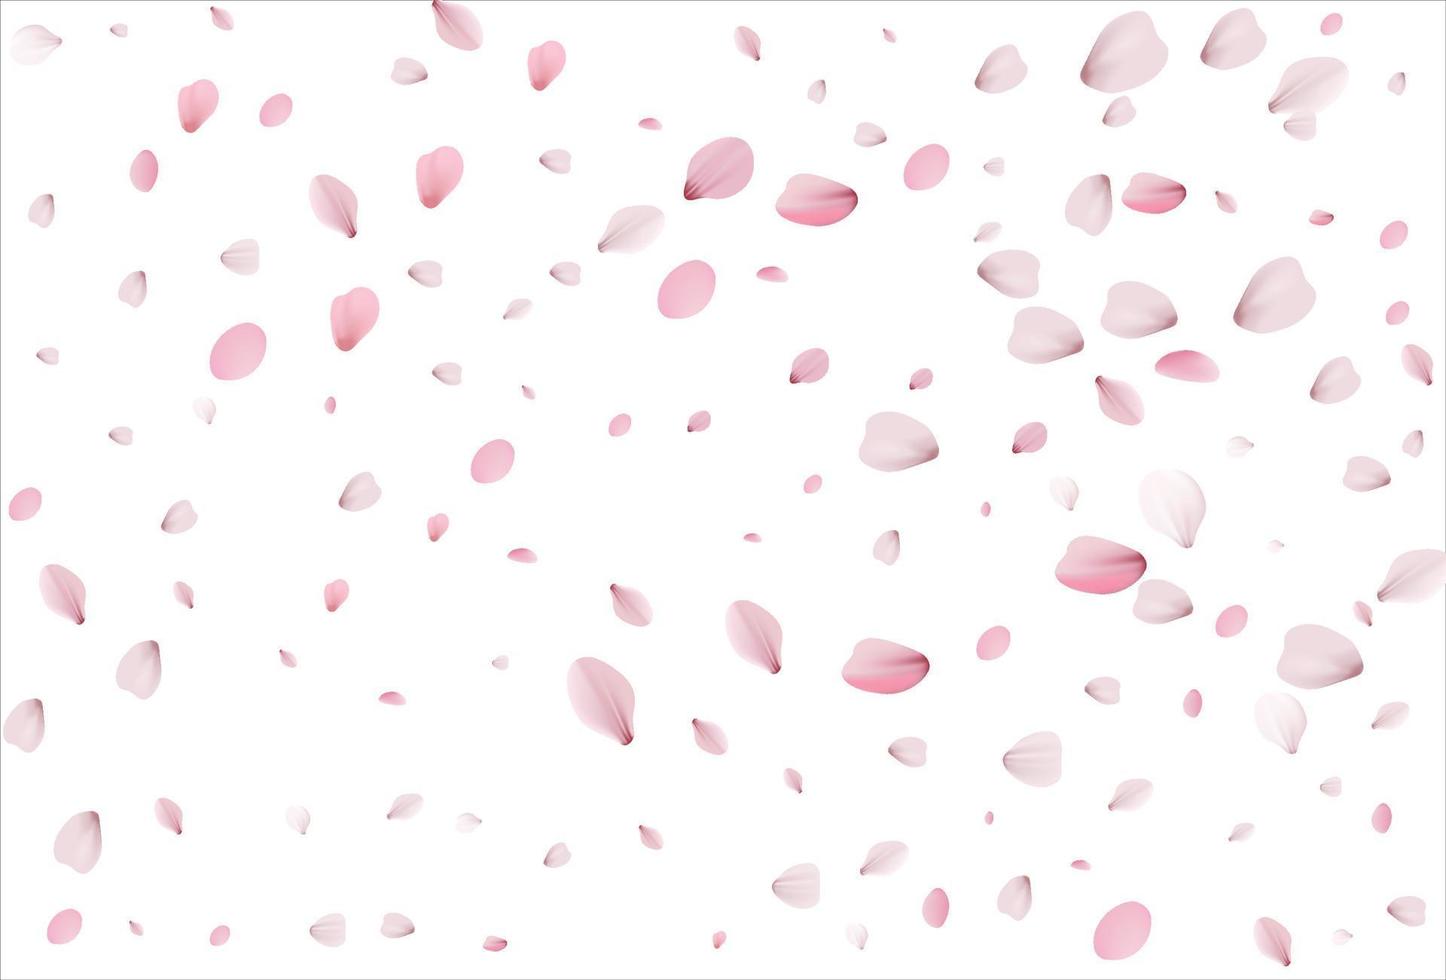 sfondo di petali di sakura. petali di ciliegio vettore